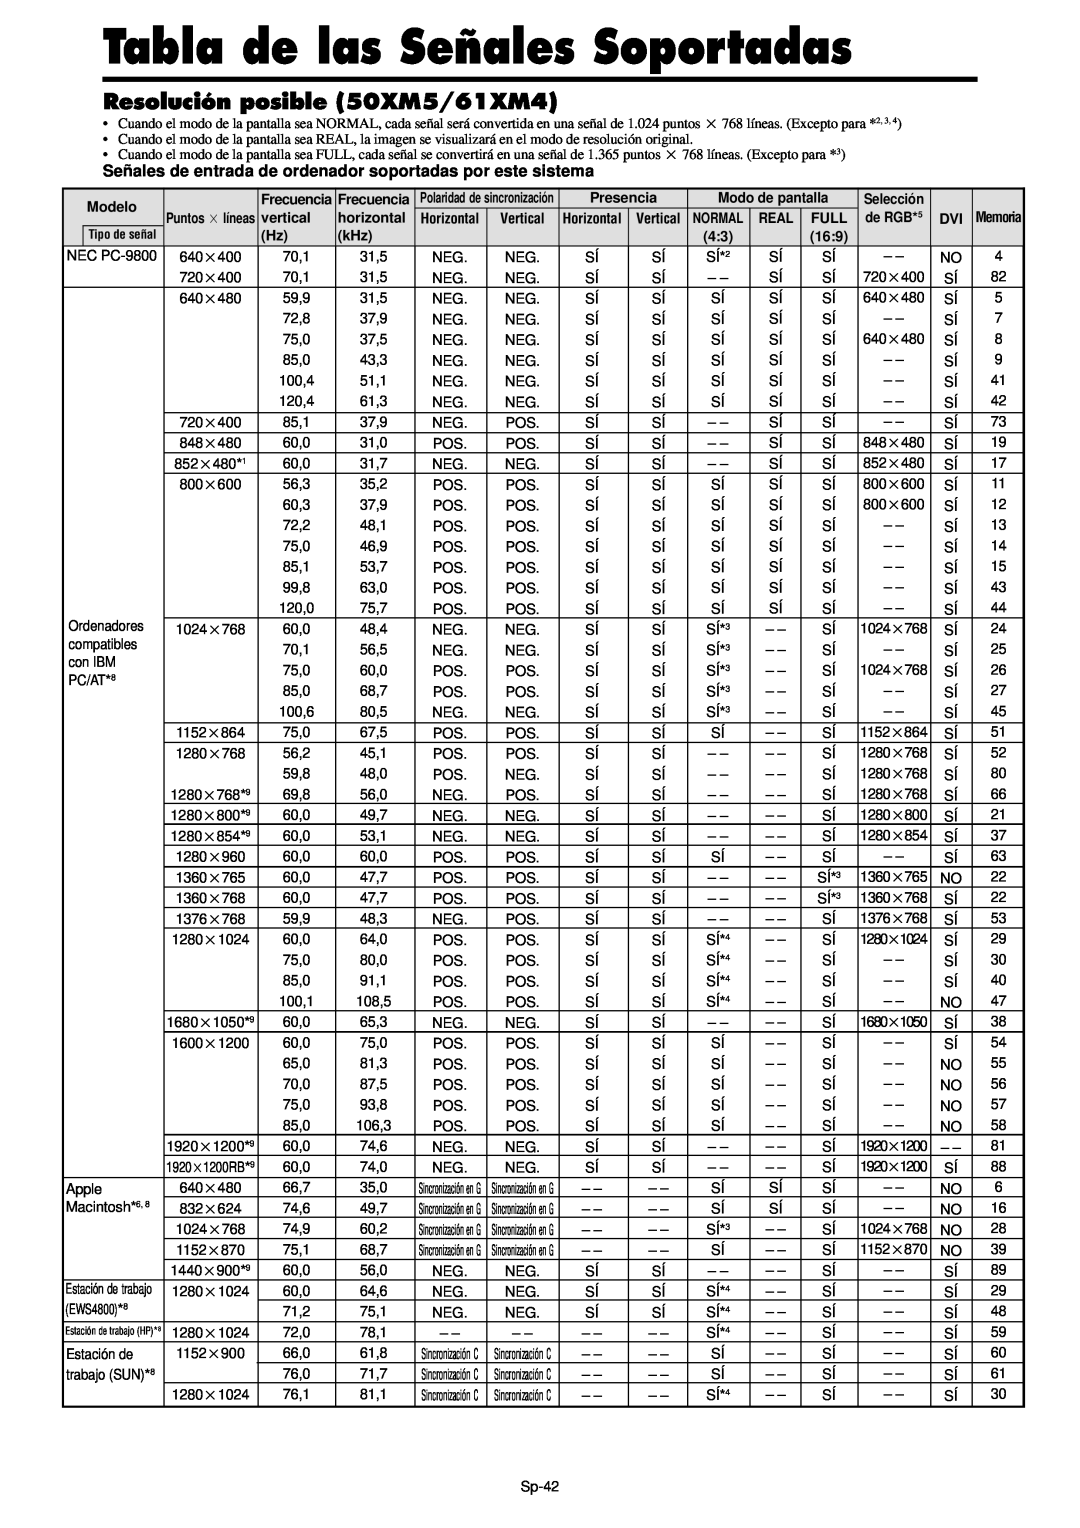 NEC PX-61XM4A, PX-42XM4A manual Resolución posible 50XM5/61XM4, Tabla de las Señales Soportadas 